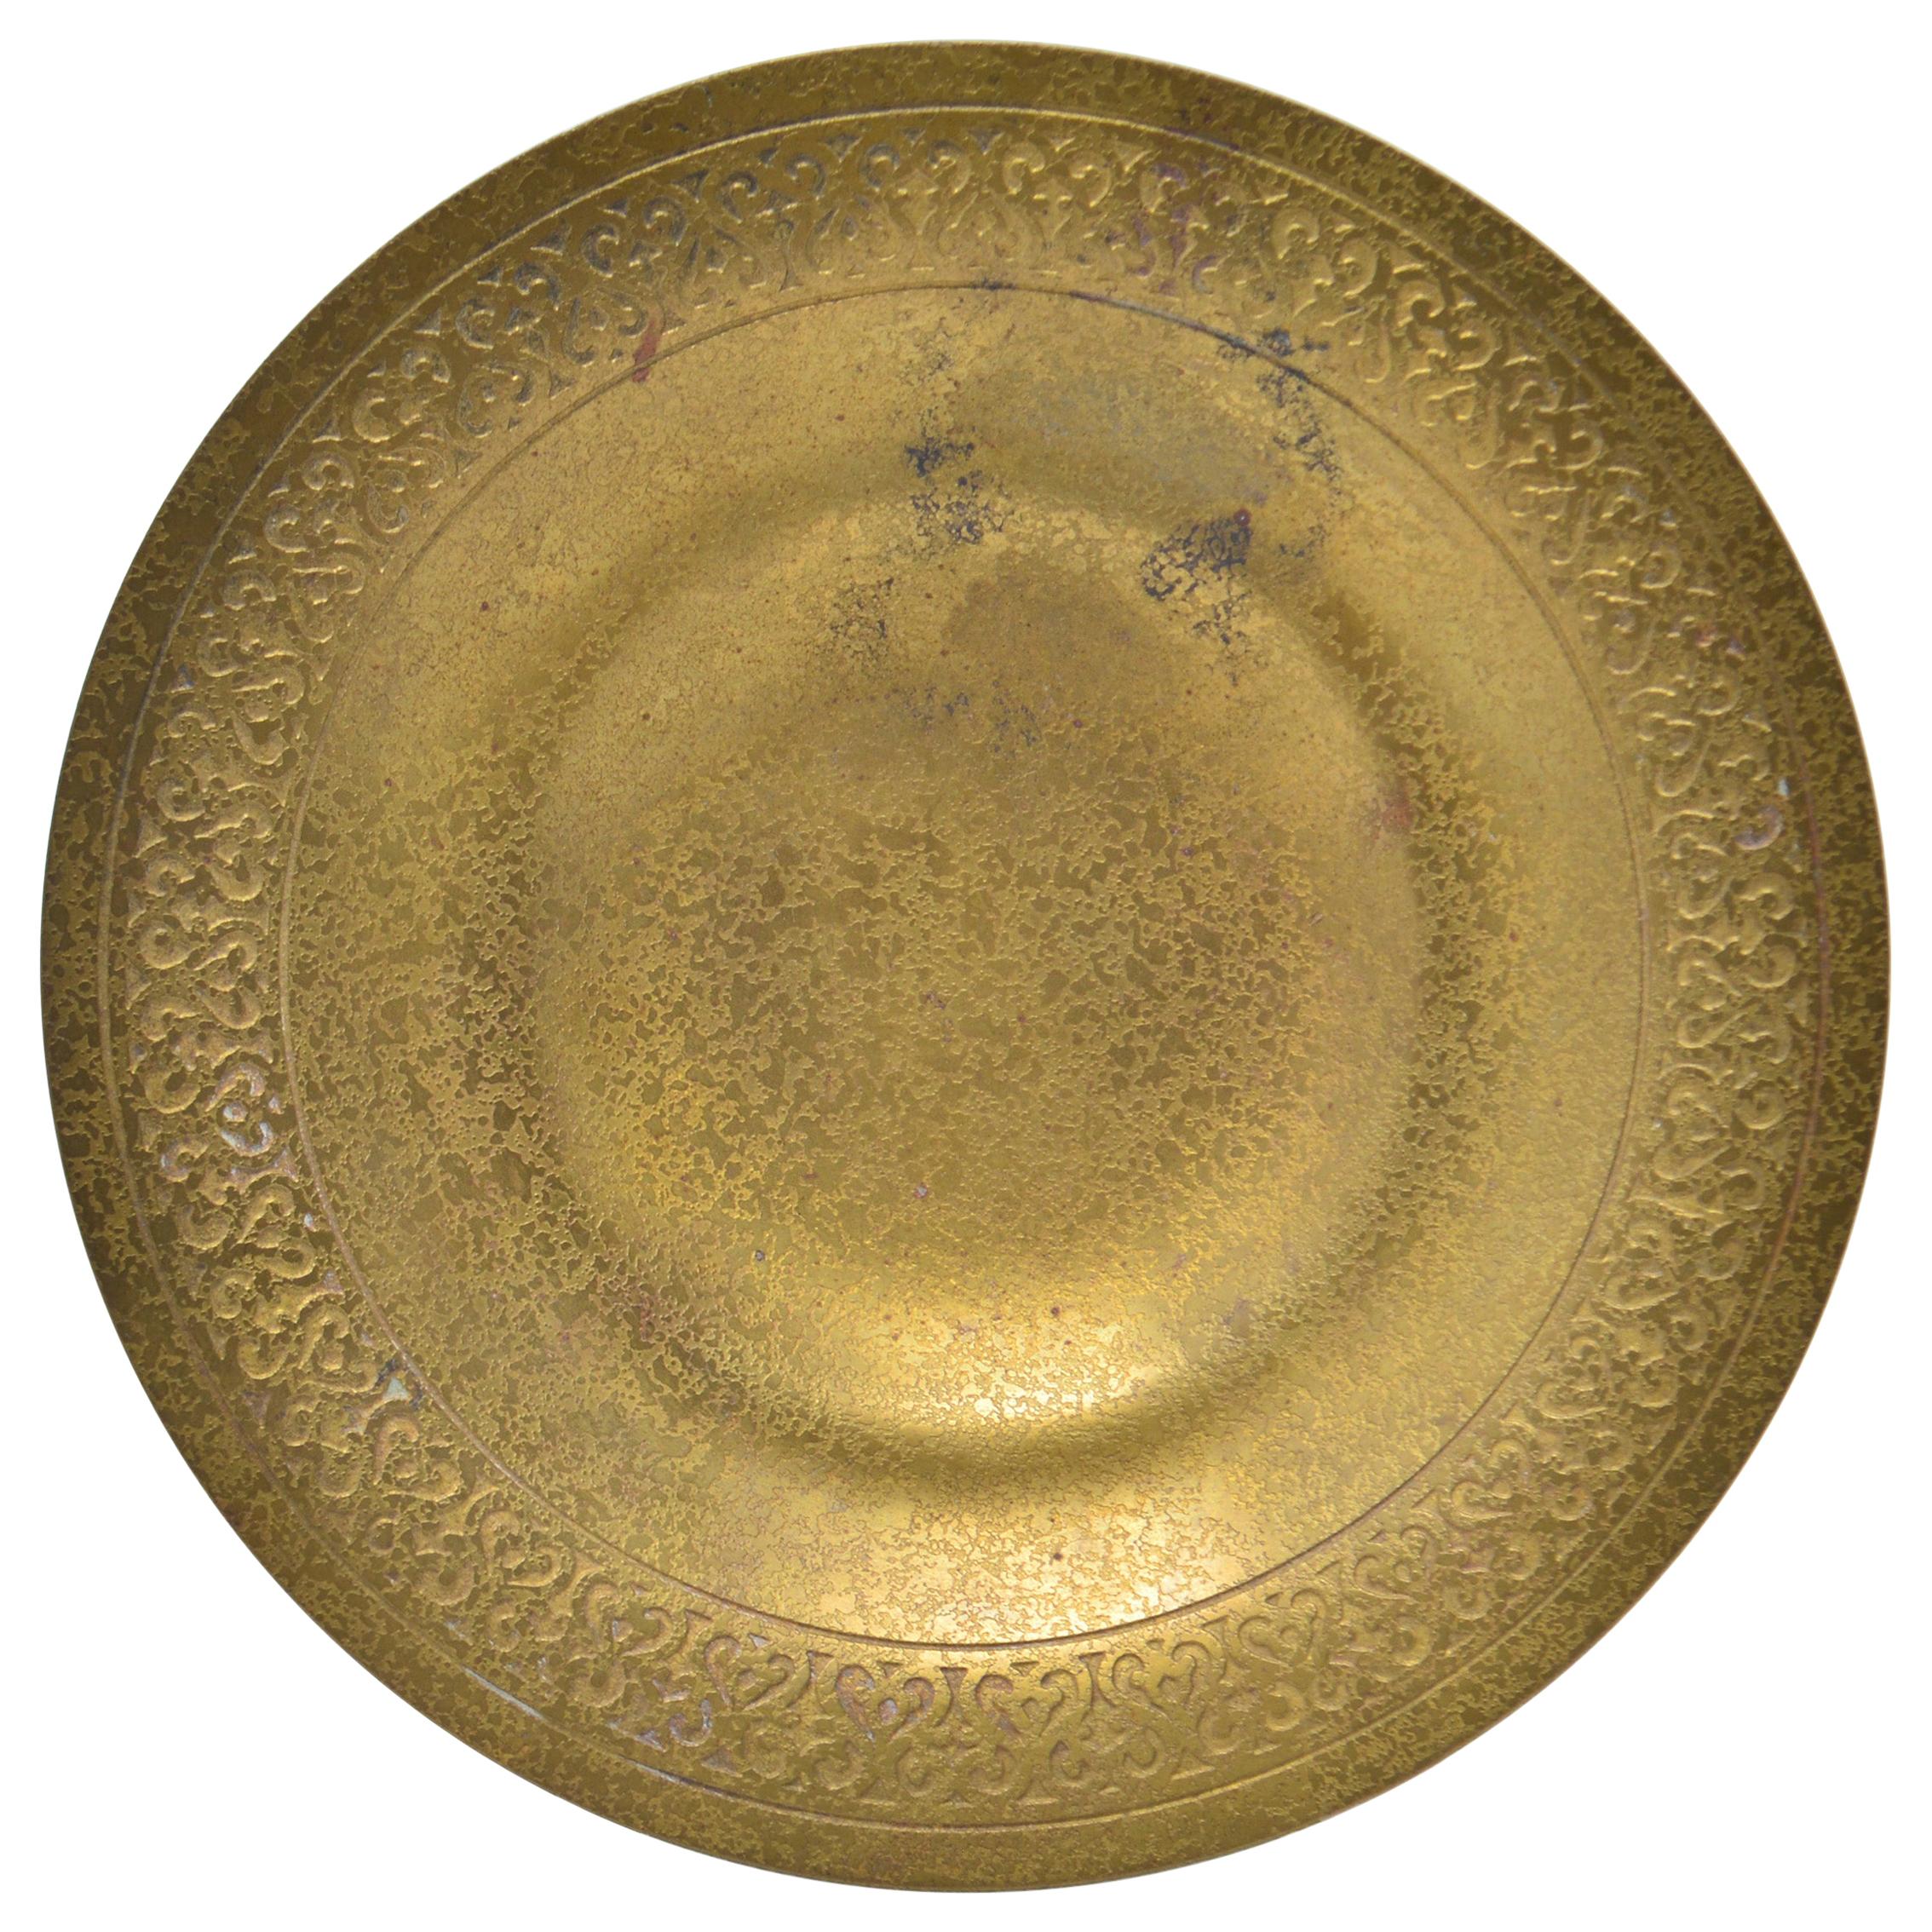 Tiffany Studios Bronze Dore Bowl